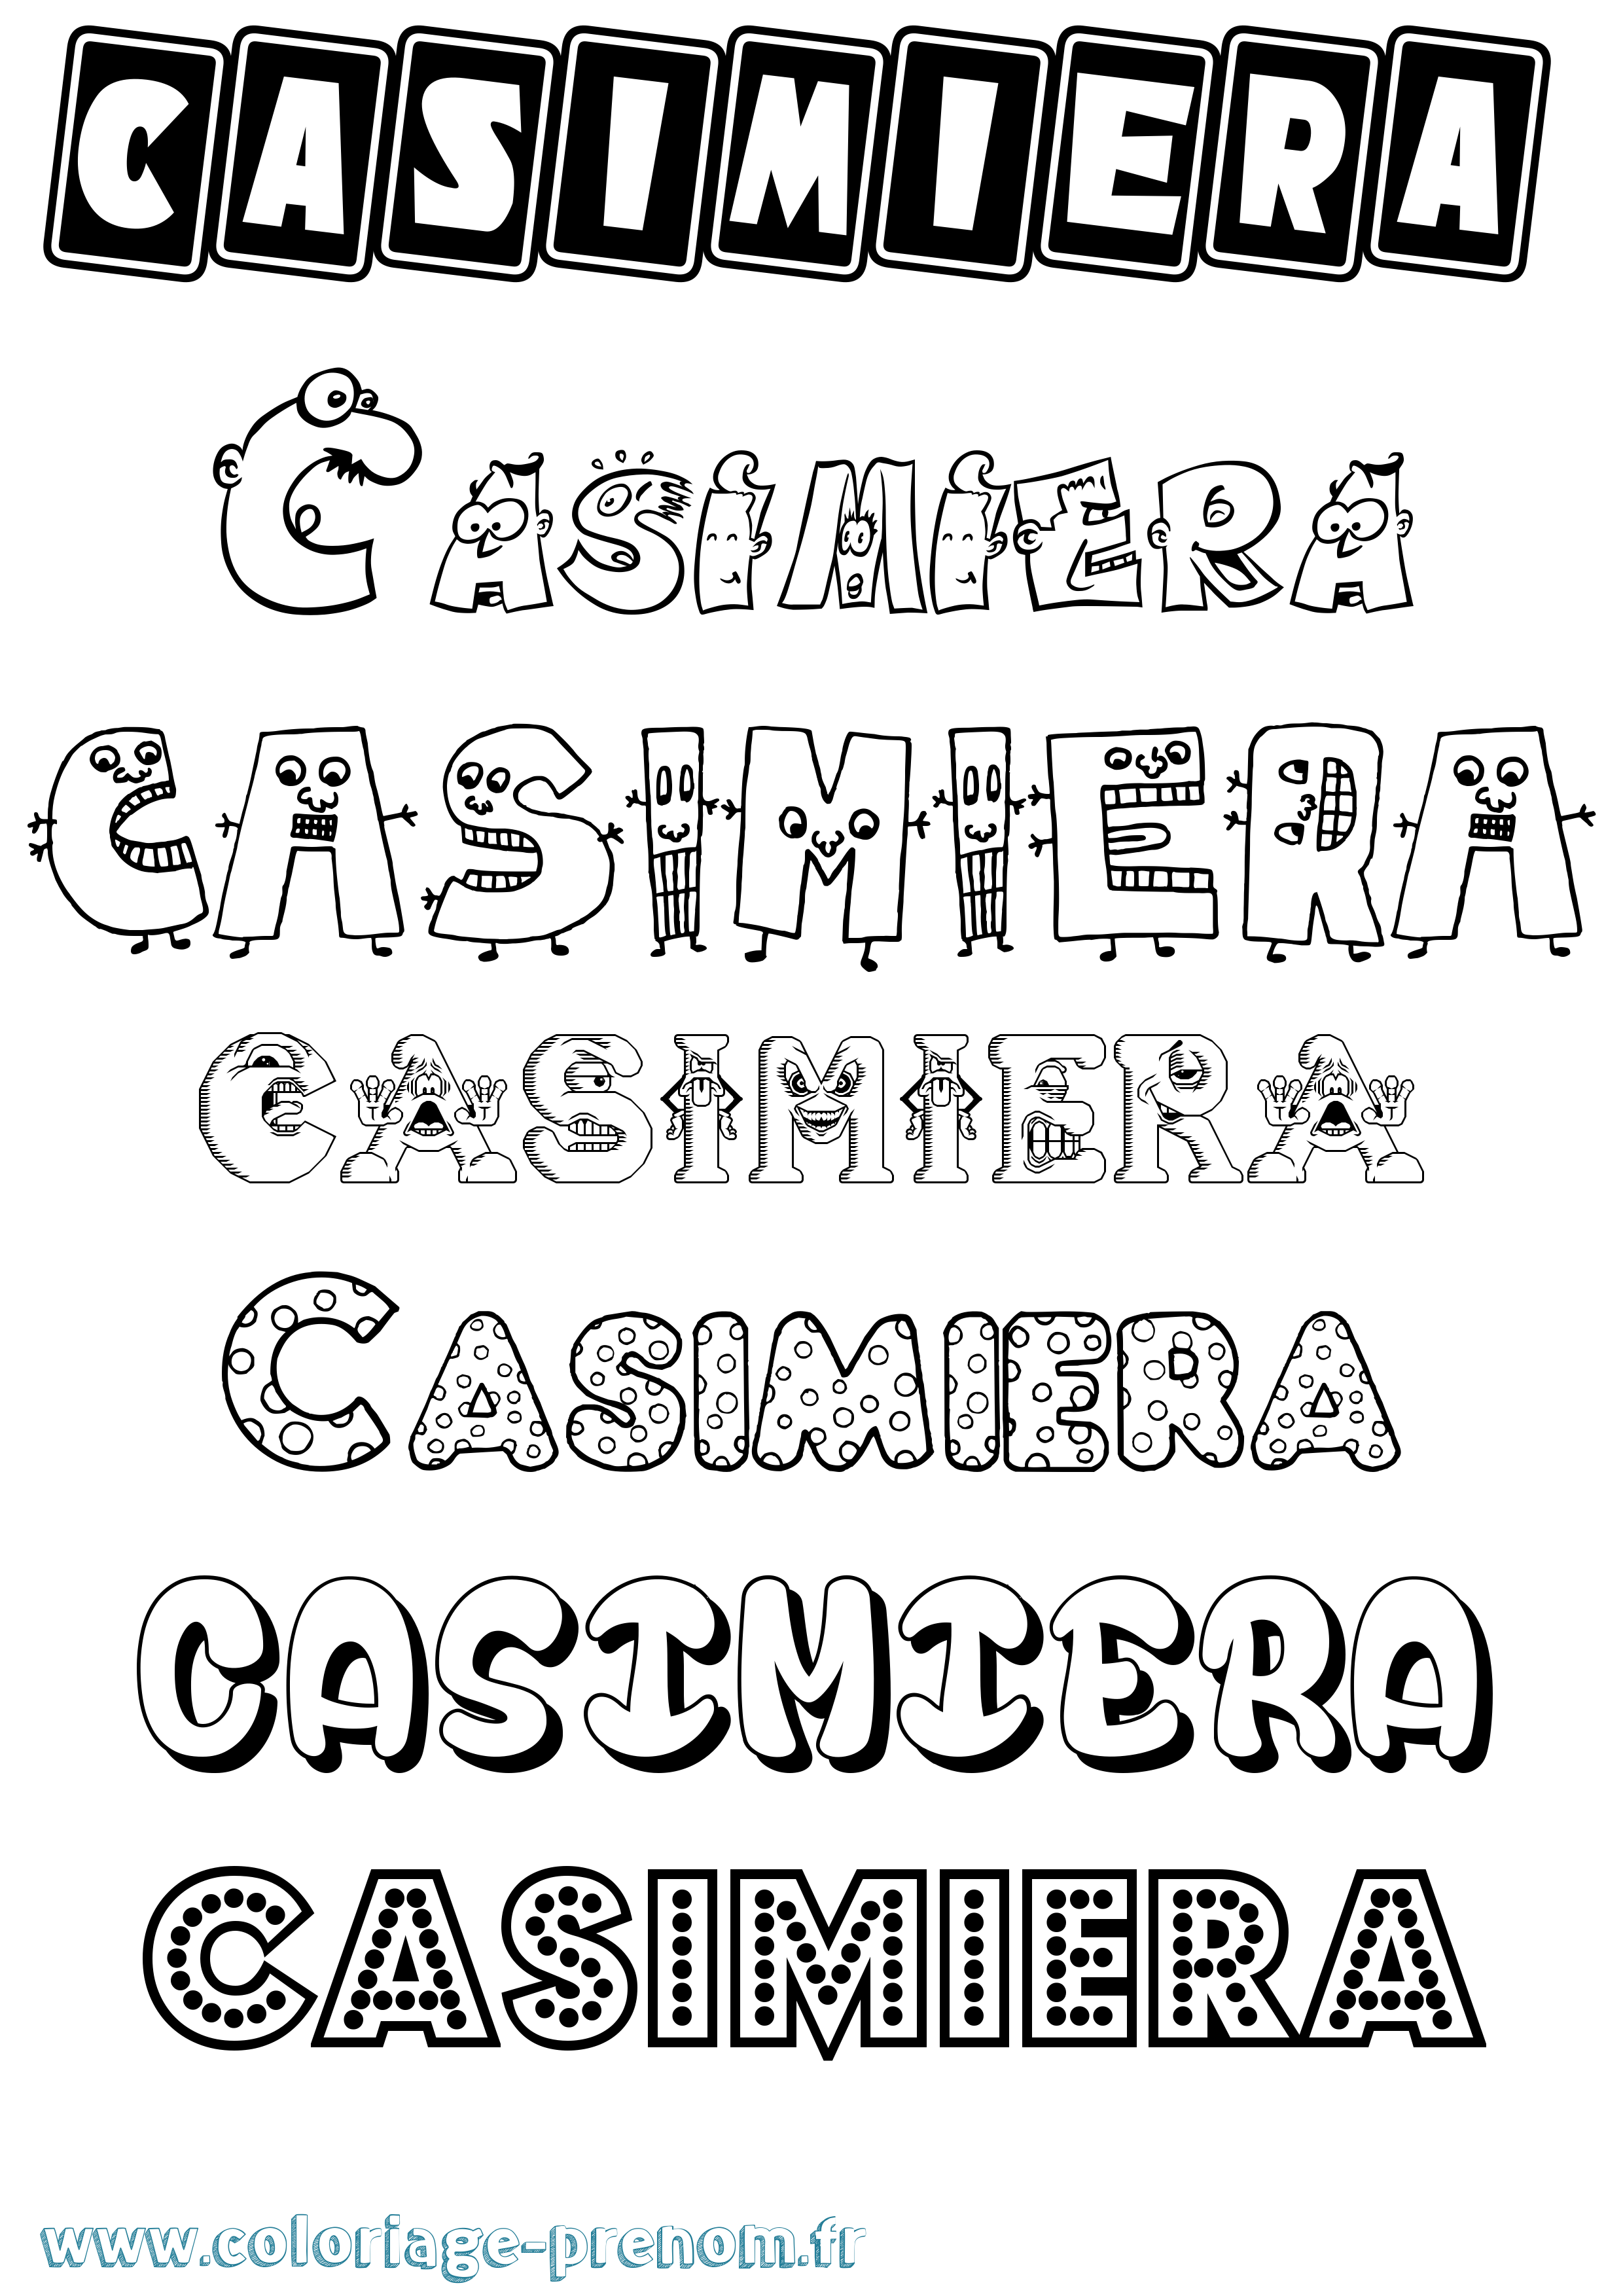 Coloriage prénom Casimiera Fun